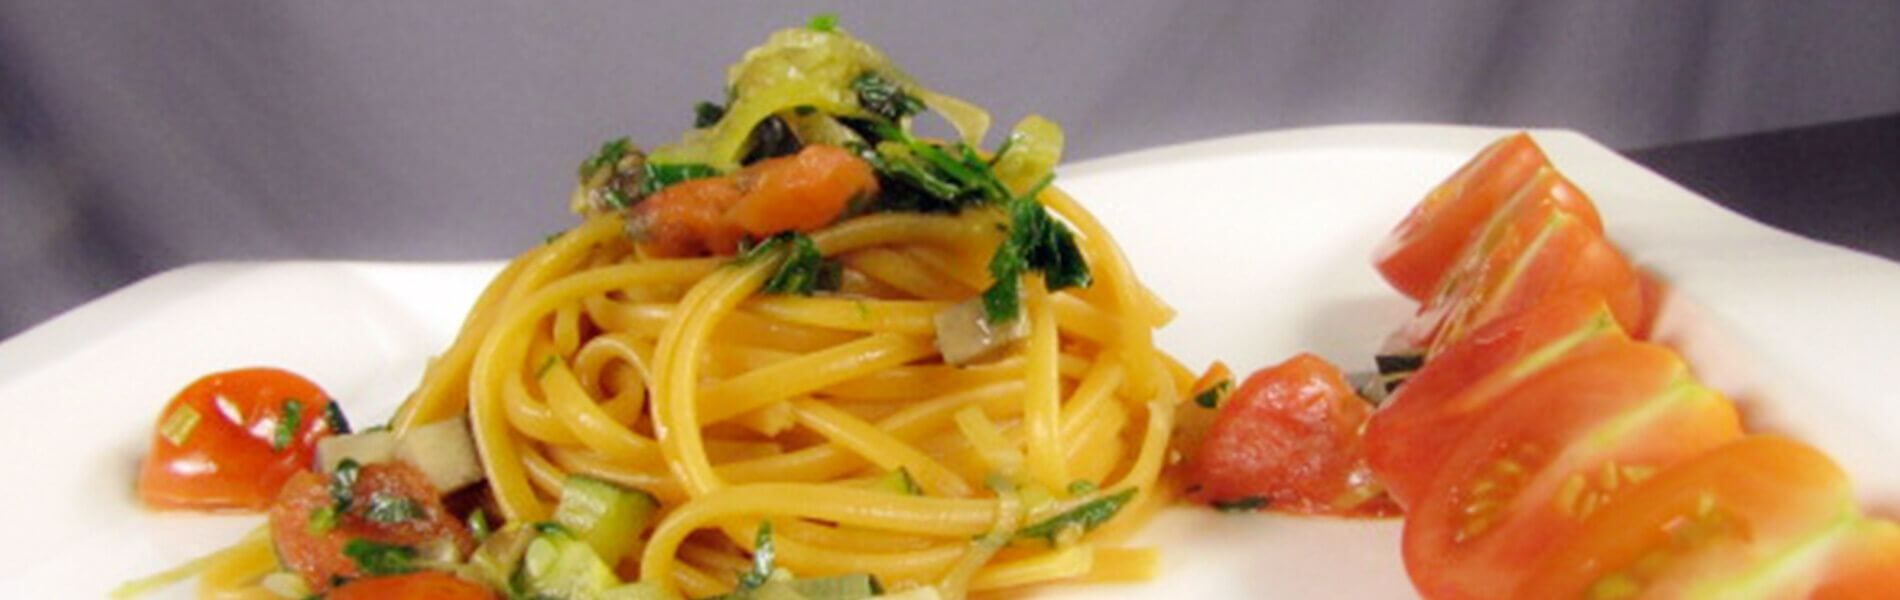 spaghetti doria con verduras